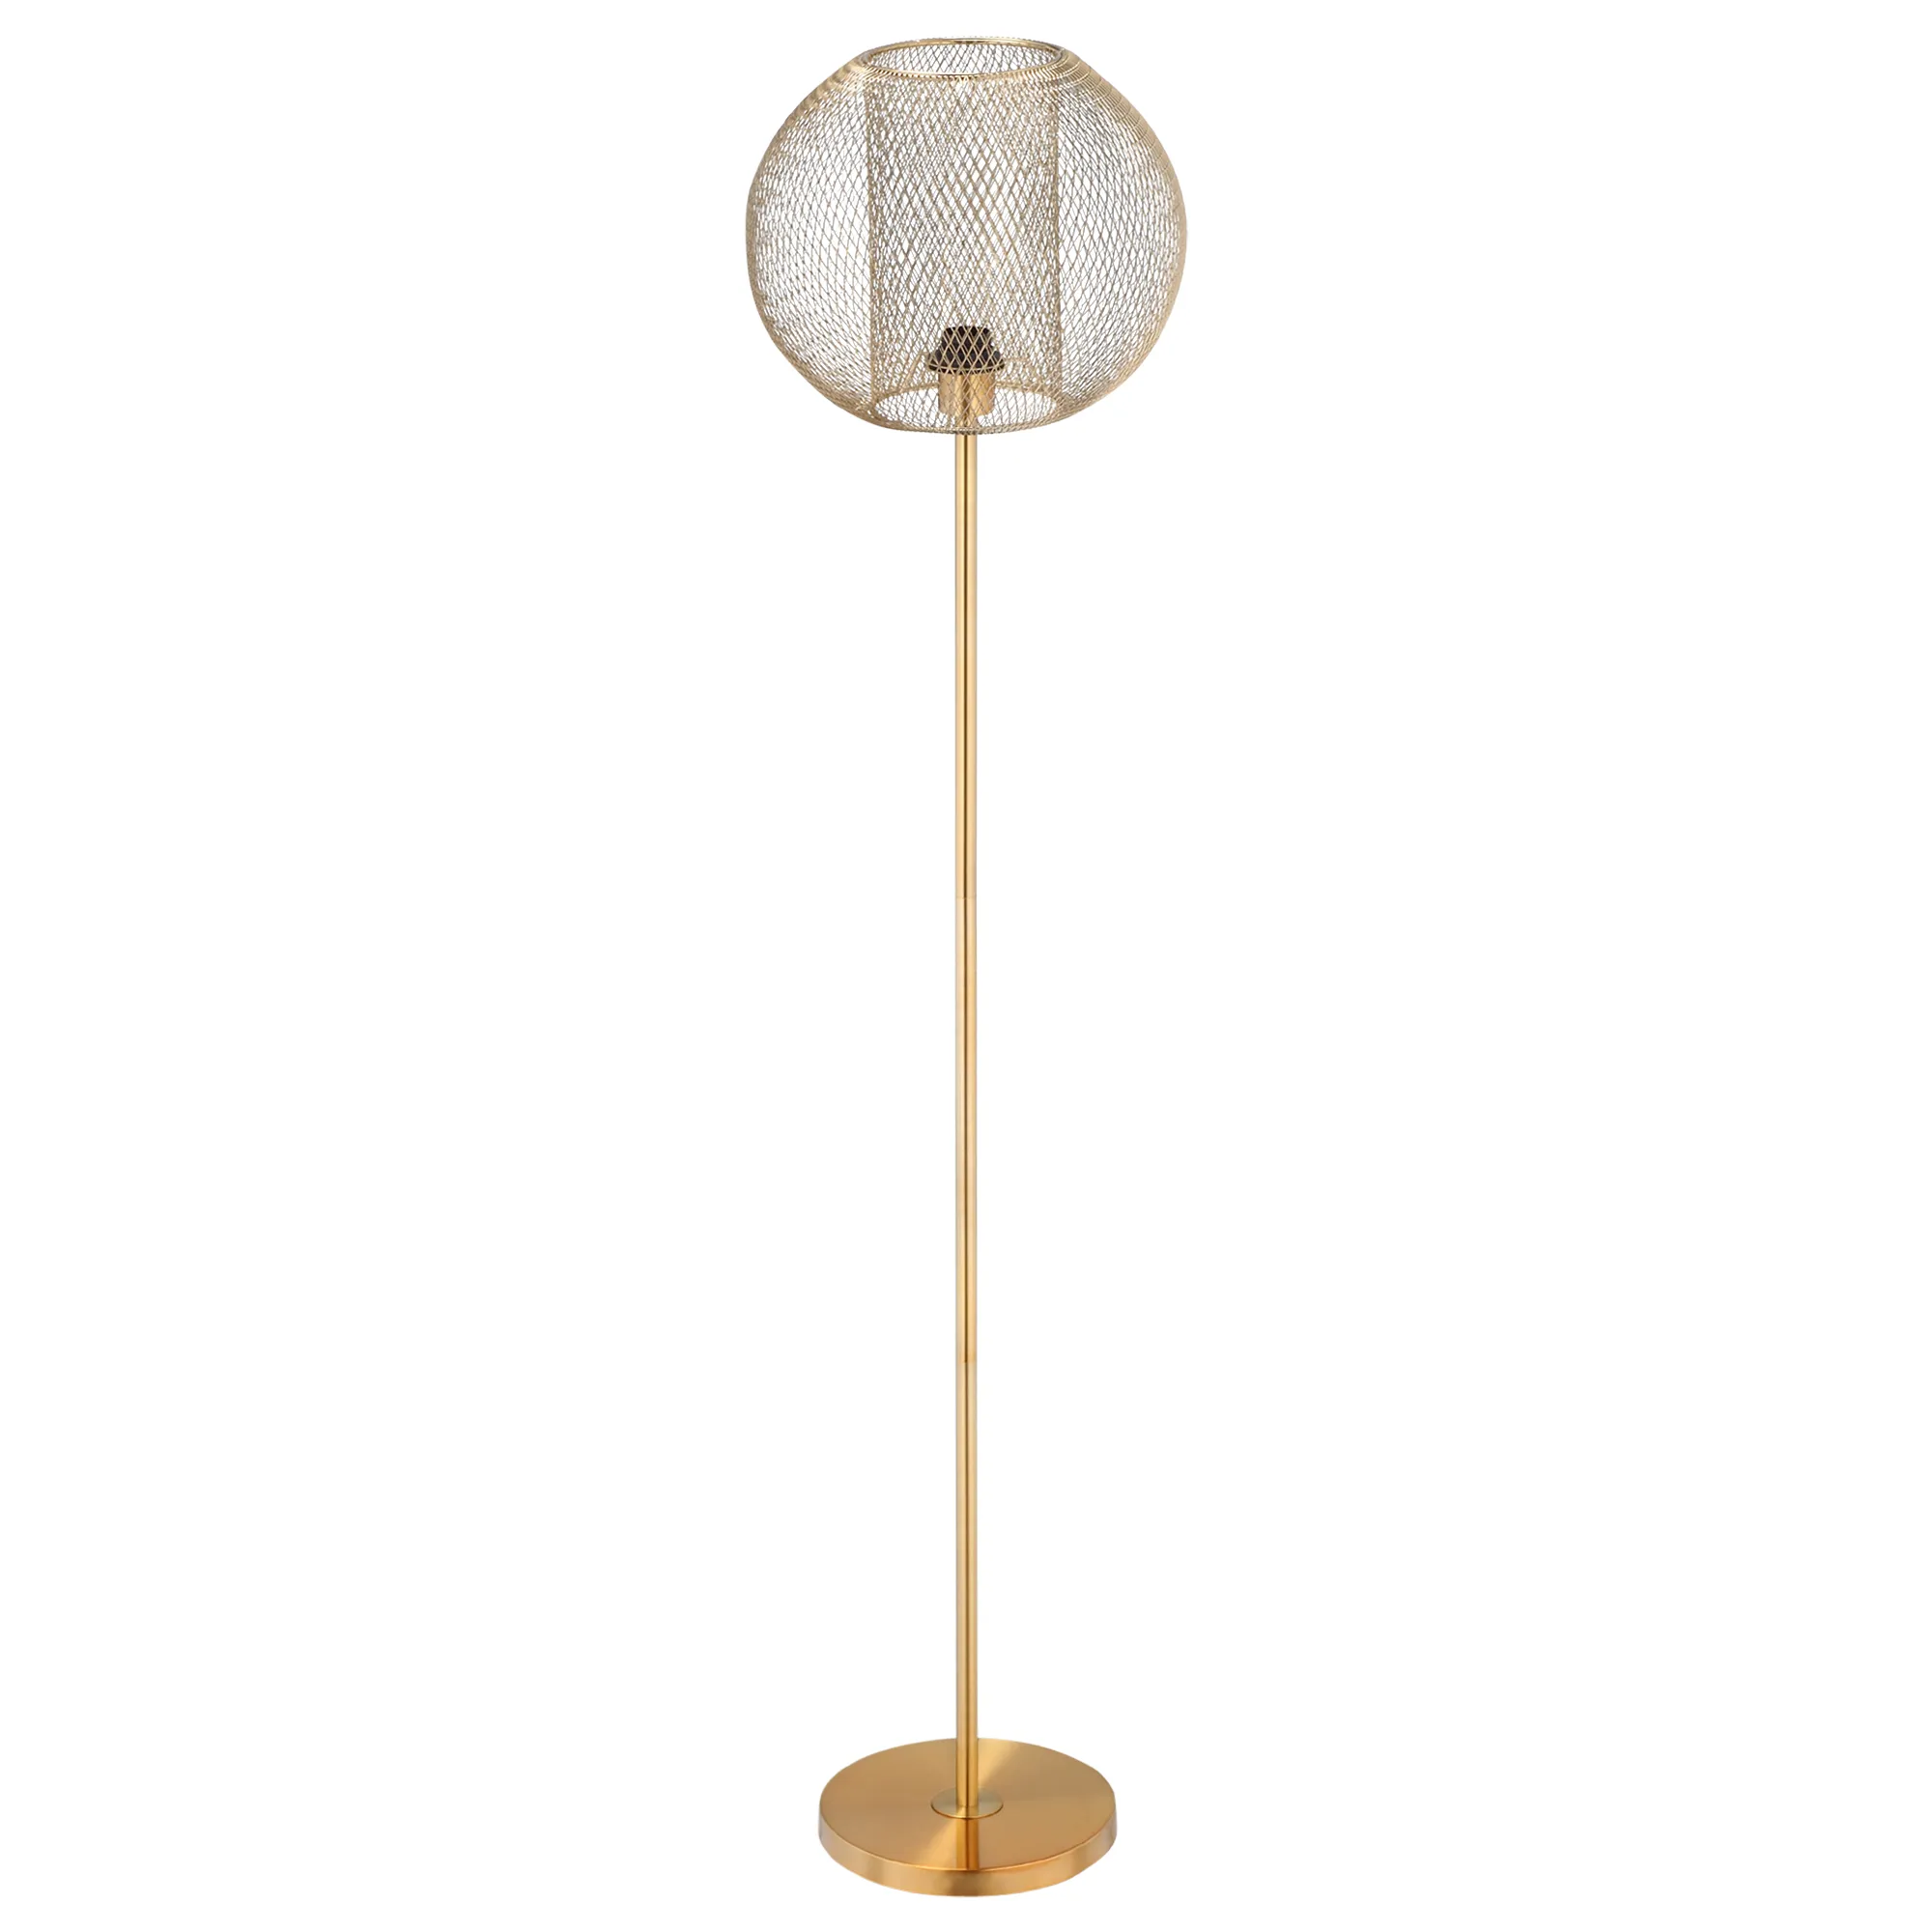  Lampada da Terra in Metallo Oro, Lampada a Piantana Moderna con Paralume di Design per Salotto e Camera da Letto, E27 40W